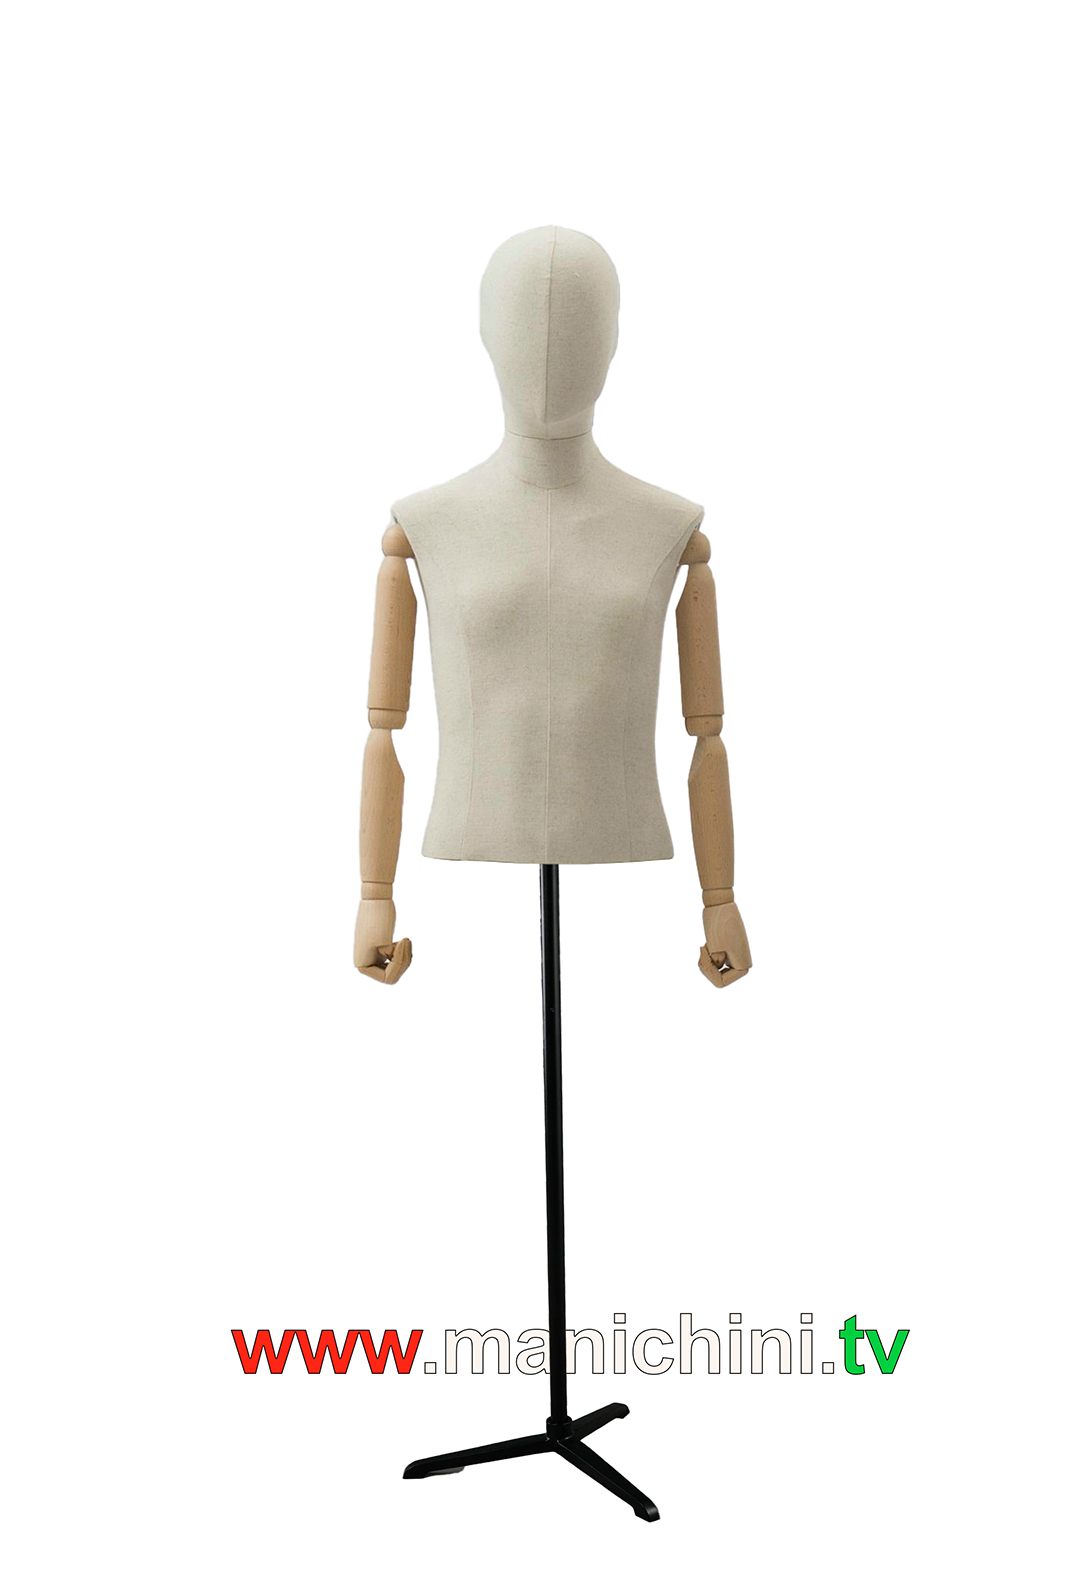 Bustos tapizados, torso de niño pequeño, brazos y cabeza de madera 4 años (copiar)